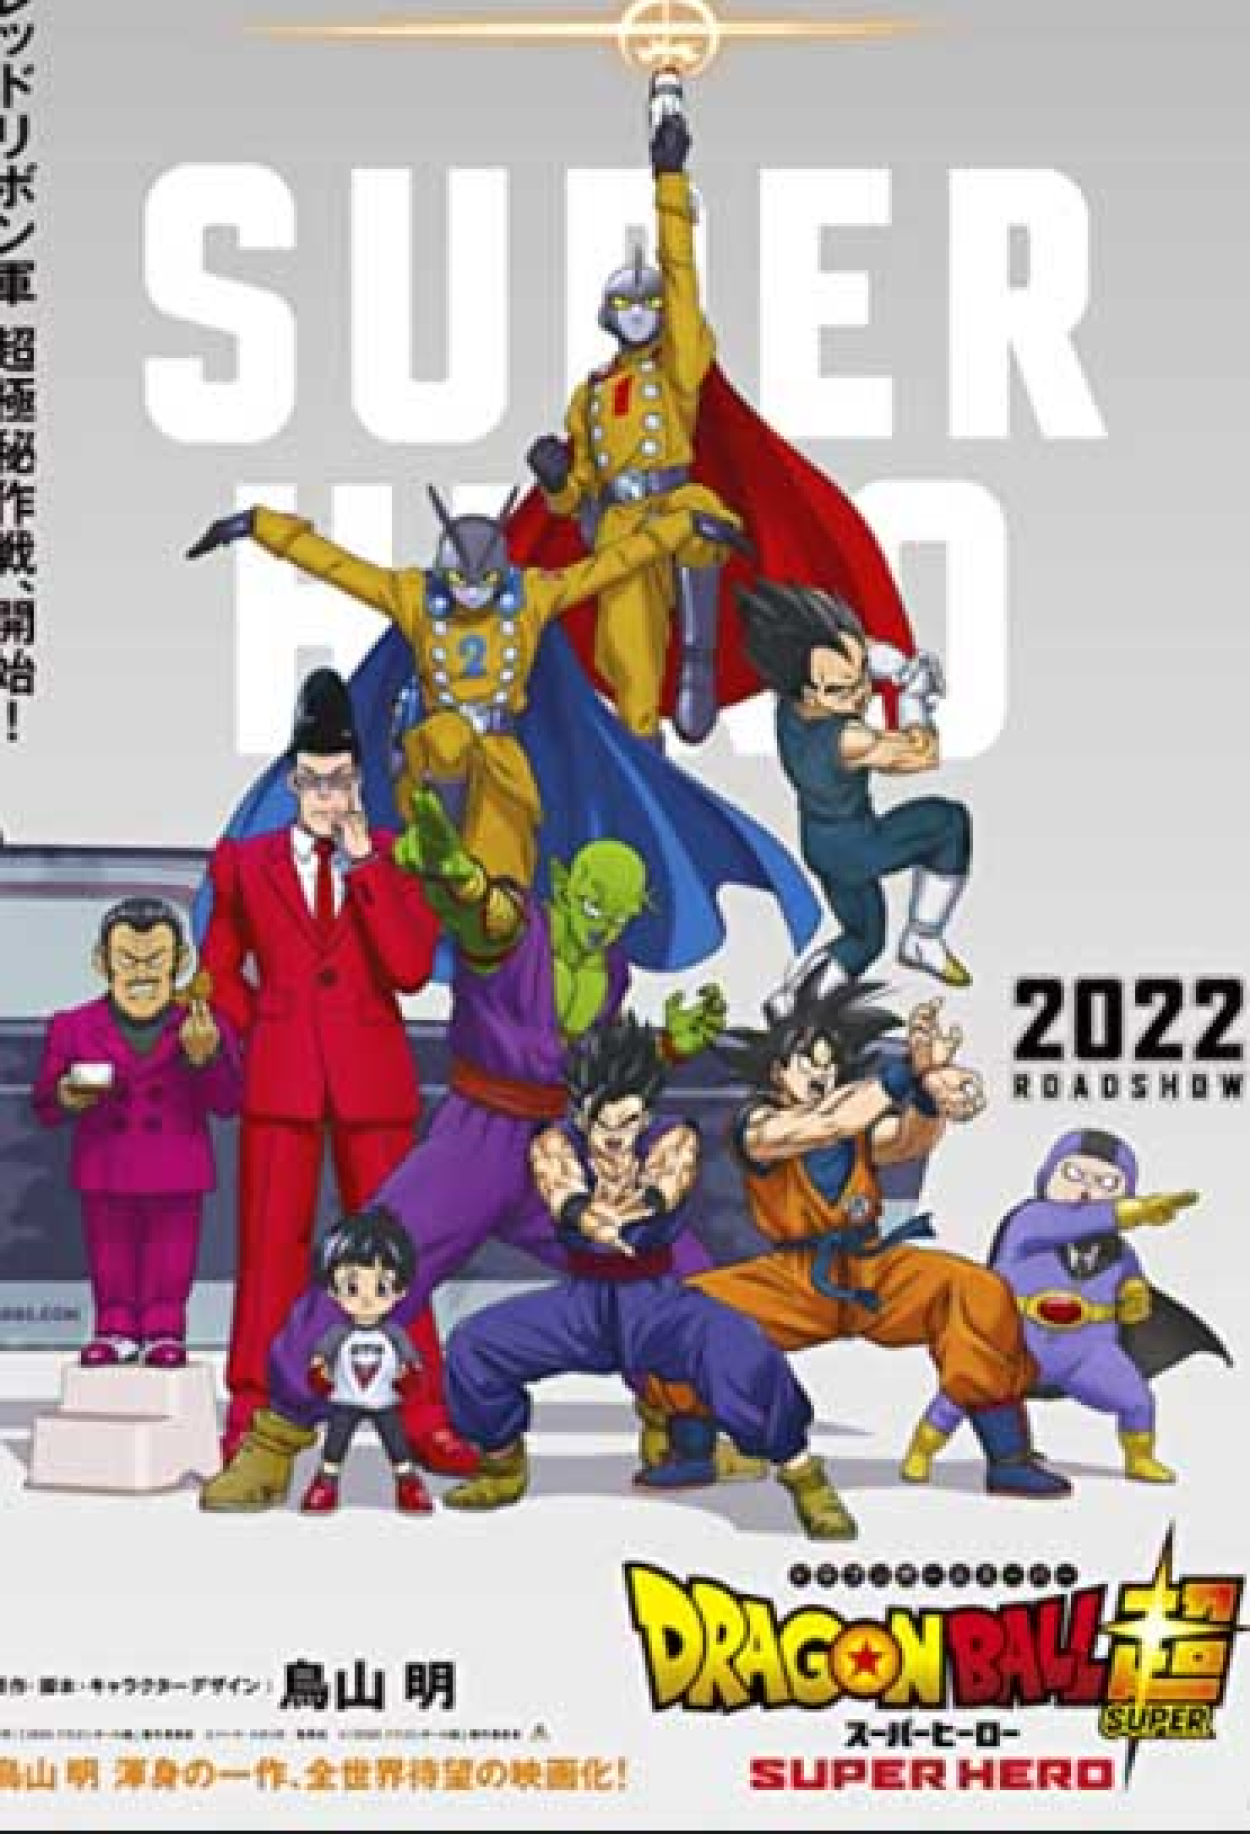 Dragon Ball Super: Super Herói (Filme), Trailer, Sinopse e Curiosidades -  Cinema10